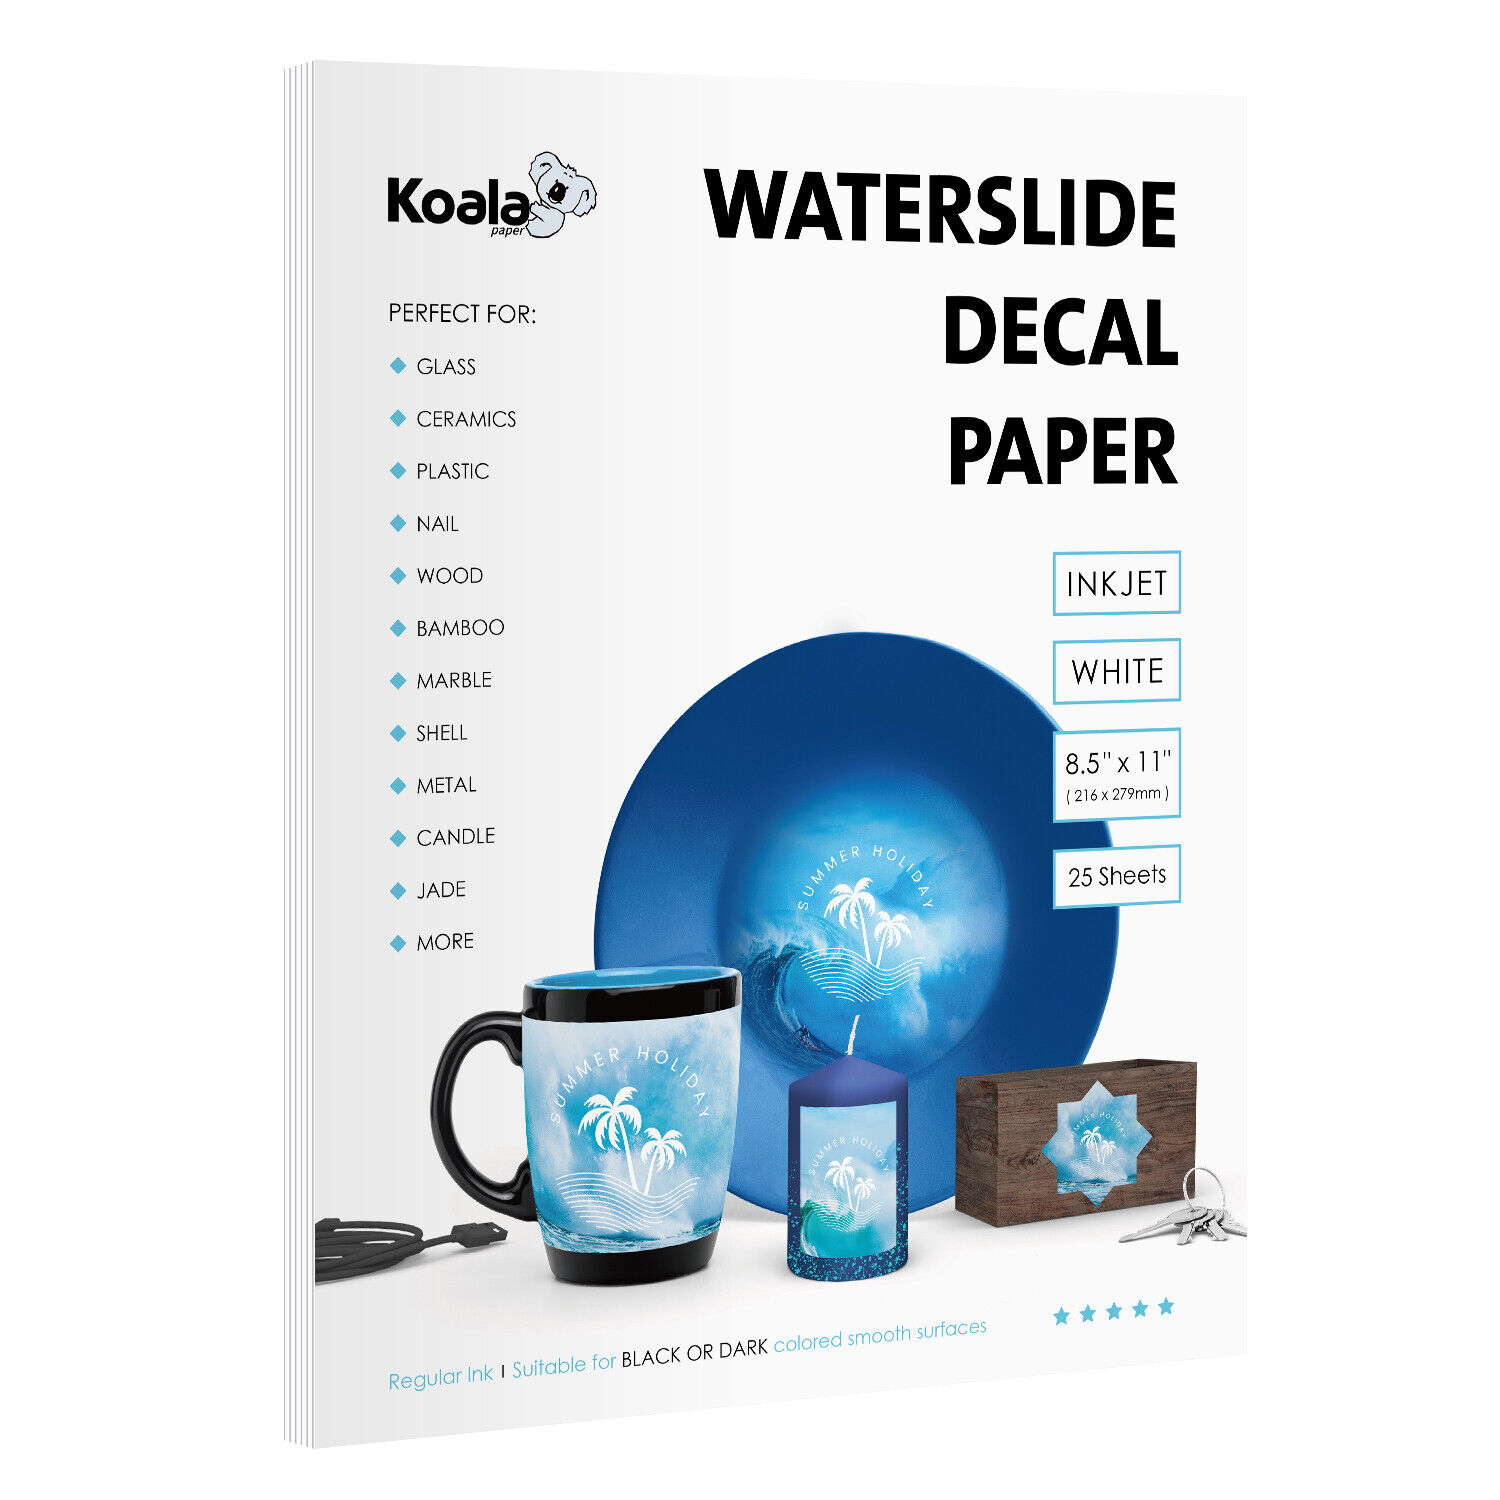 Koala Waterslide Decal Paper Inkjet White 25 Sheets Water Slide Transfer Paper